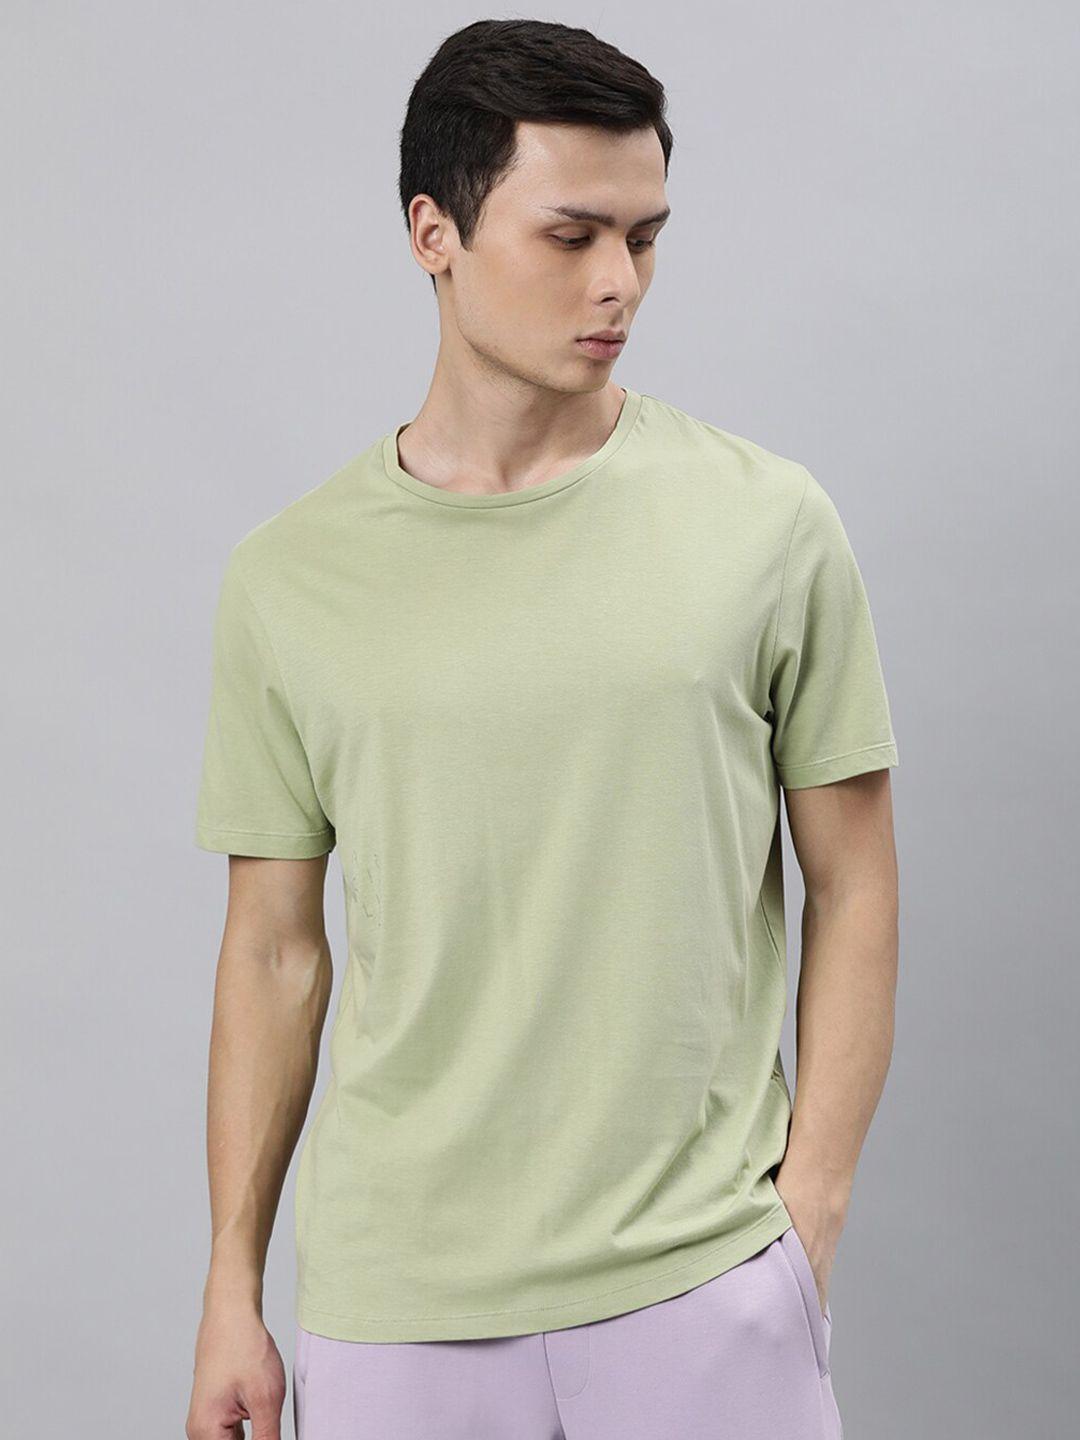 articale men green solid slim fit cotton t-shirt